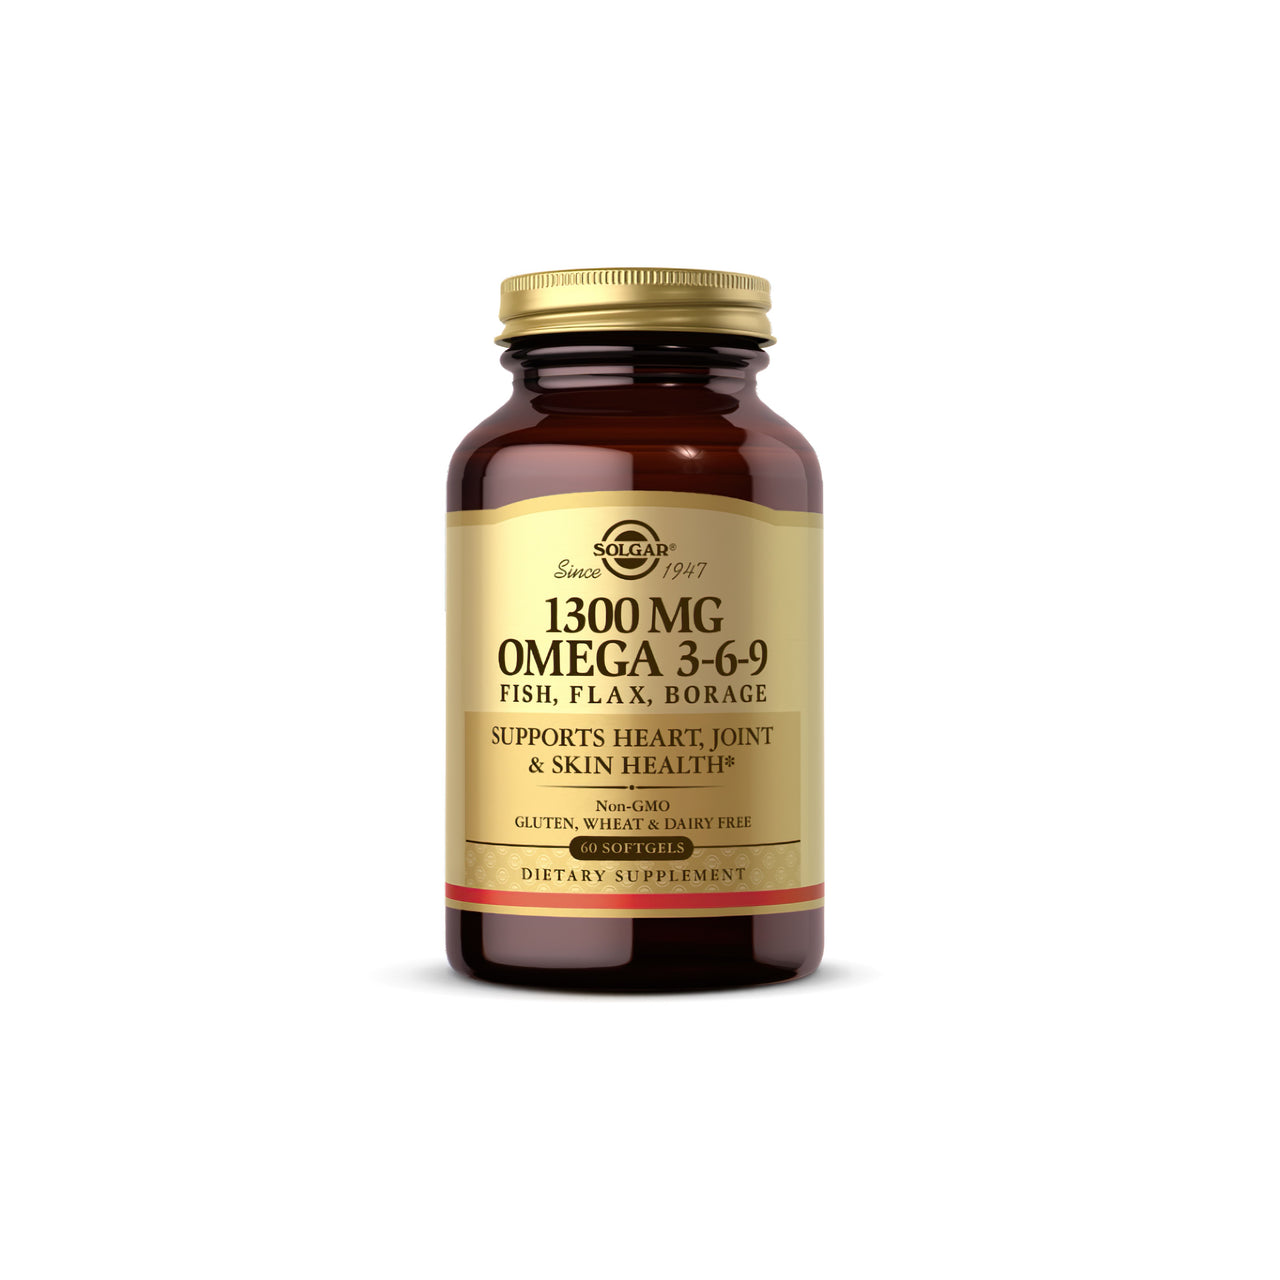 Un frasco de Solgar Omega 3-6-9 60 sgel, destilado molecularmente para garantizar su pureza y que contiene 1000 mg.